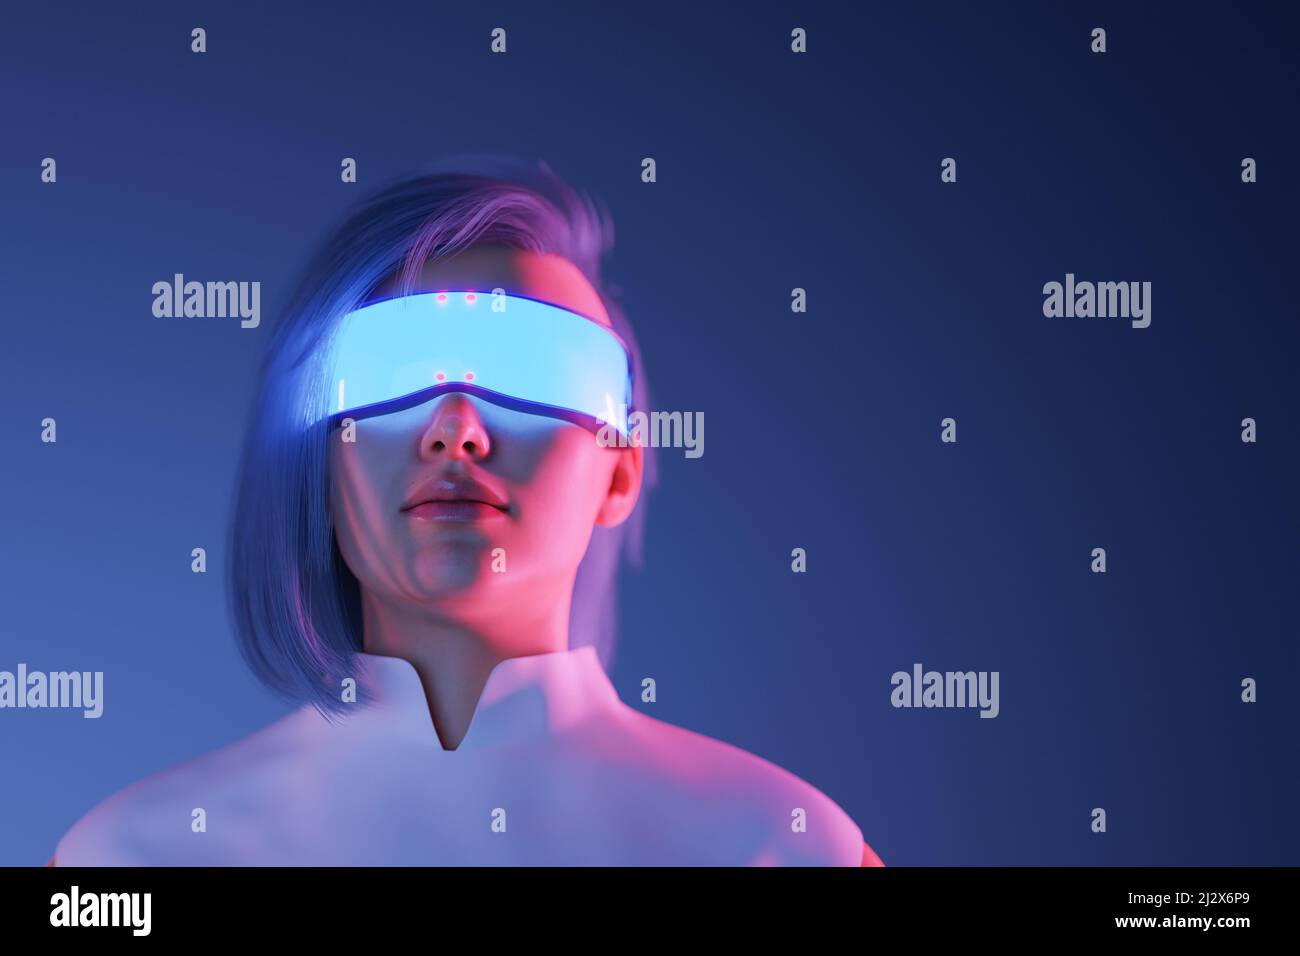 3D illustration de la femme utilisant des lunettes VR futuristes lumineuses pour explorer le cyberespace et Metaverse sur fond bleu foncé Banque D'Images